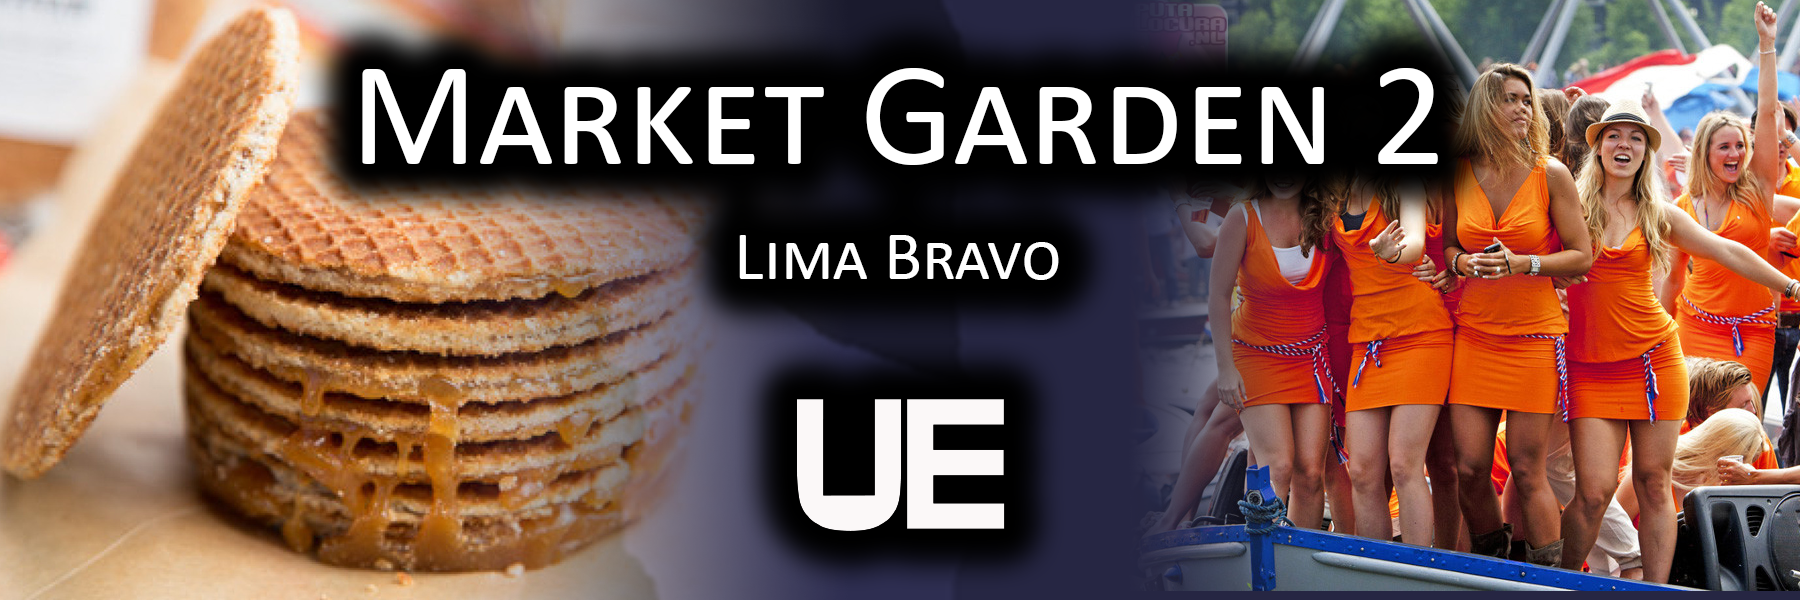 Market Garden 2 | Lima Bravo